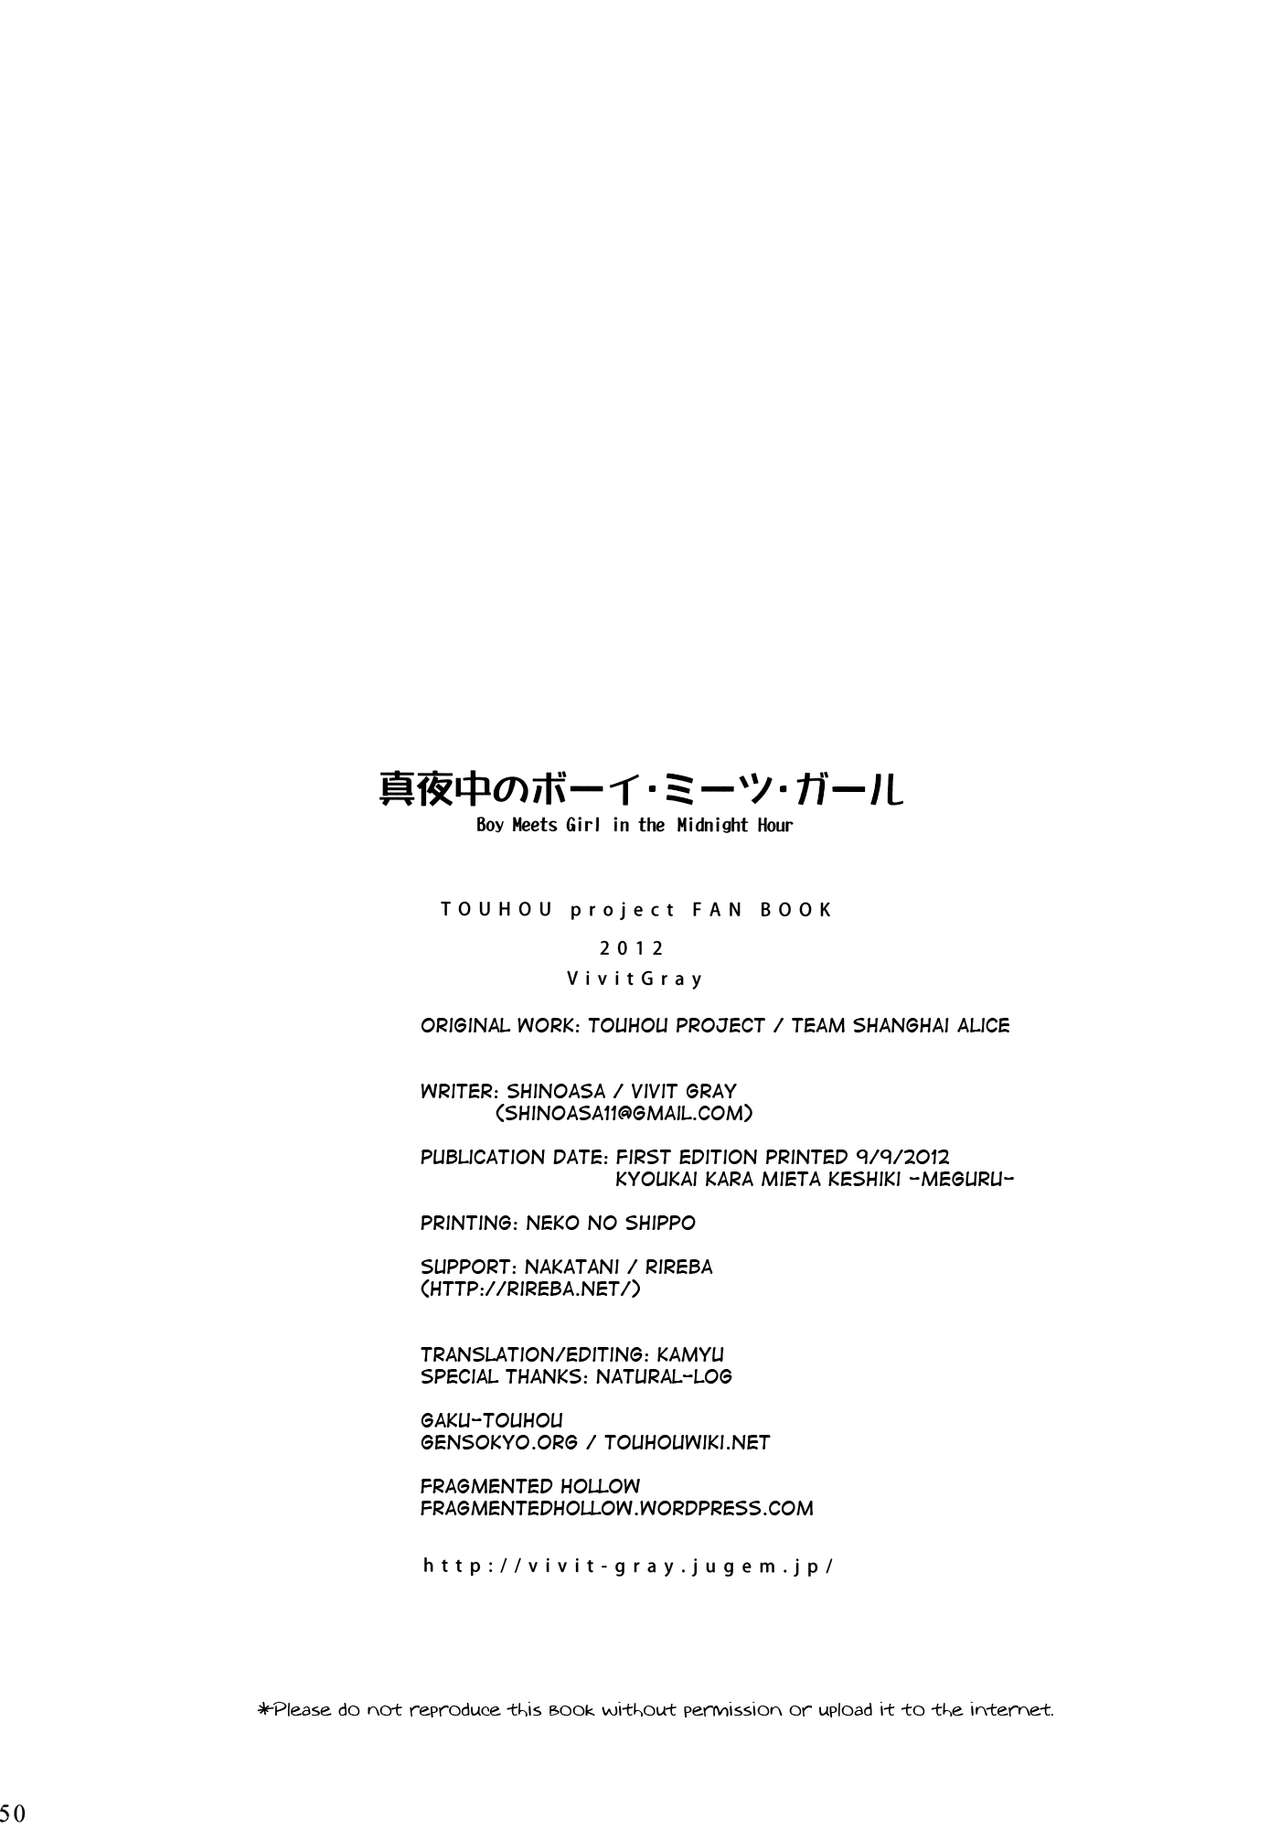 (Kyoukai kara Mieta Keshiki -Meguru-) [Vivit Gray (Shinoasa)] Mayonaka no Boy Meets Girl | Boy Meets Girl in the Midnight Hour (Touhou Project) [English] [Gaku-Touhou] 48